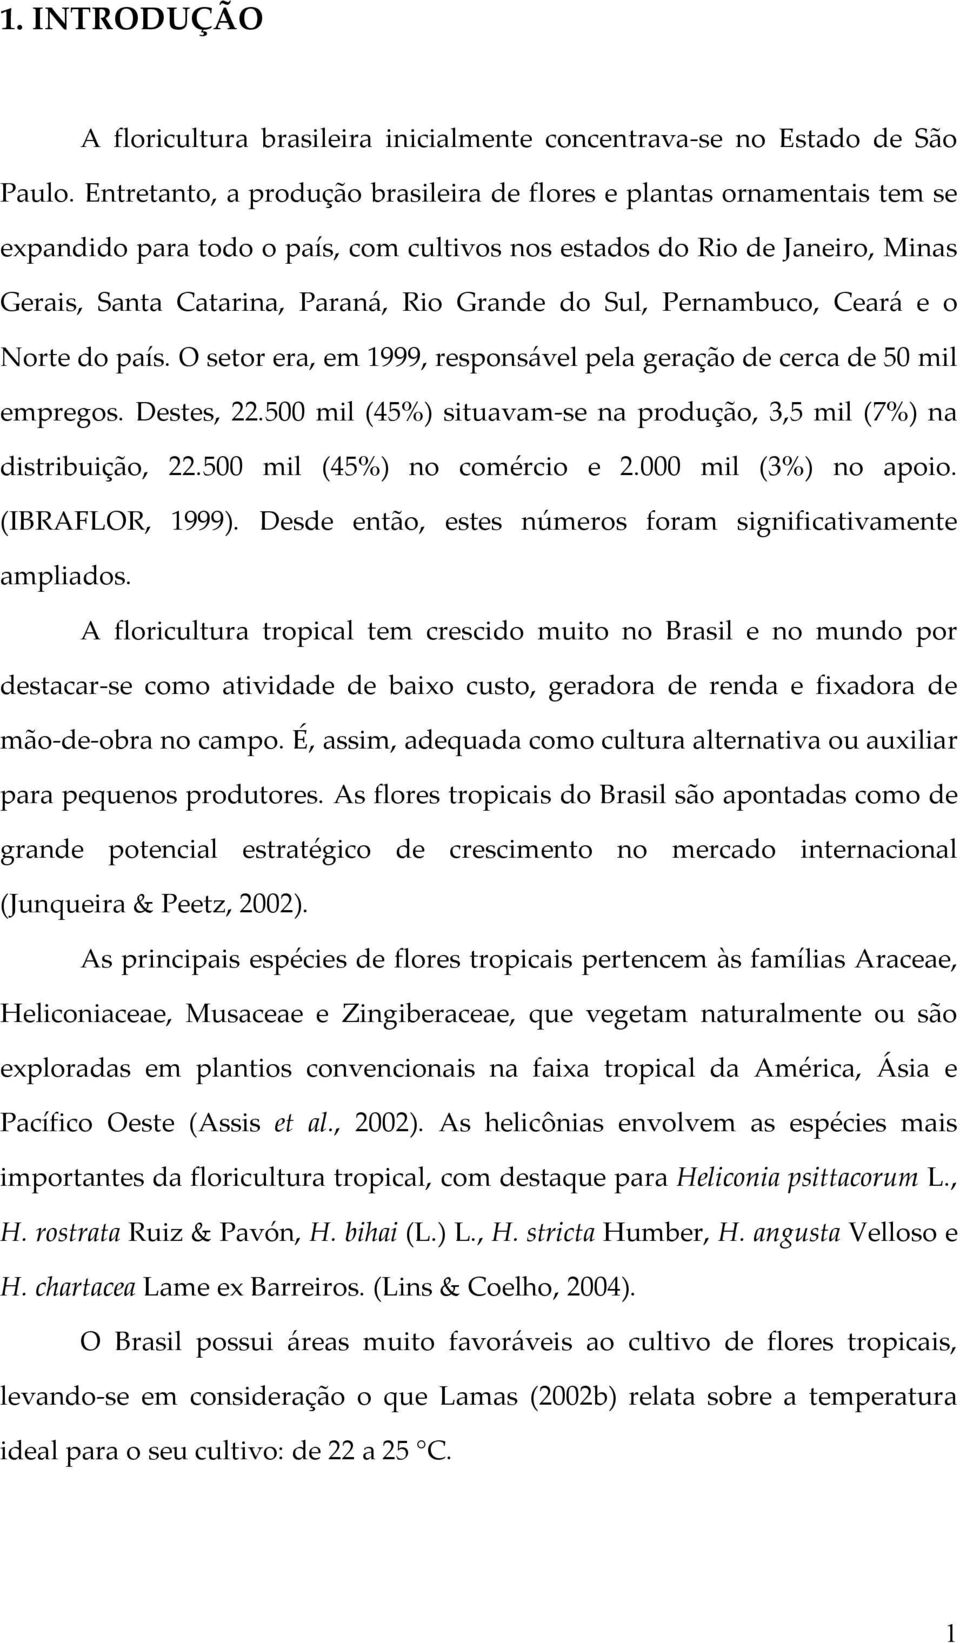 Sul, Pernambuco, Ceará e o Norte do país. O setor era, em 1999, responsável pela geração de cerca de 50 mil empregos. Destes, 22.